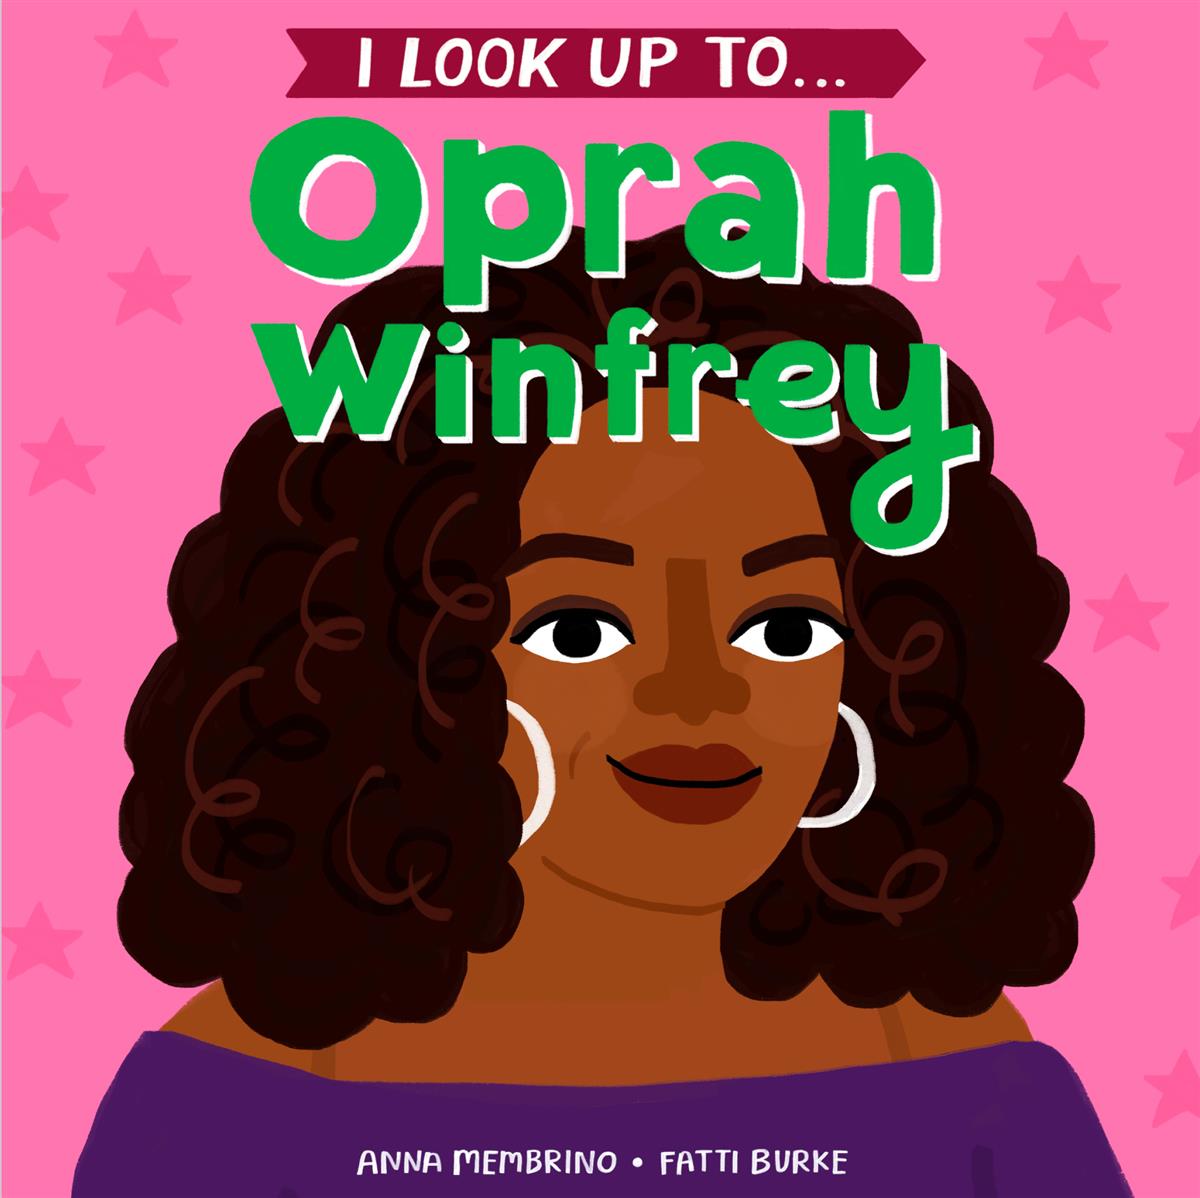 A cartoon depiction of Oprah Winfrey